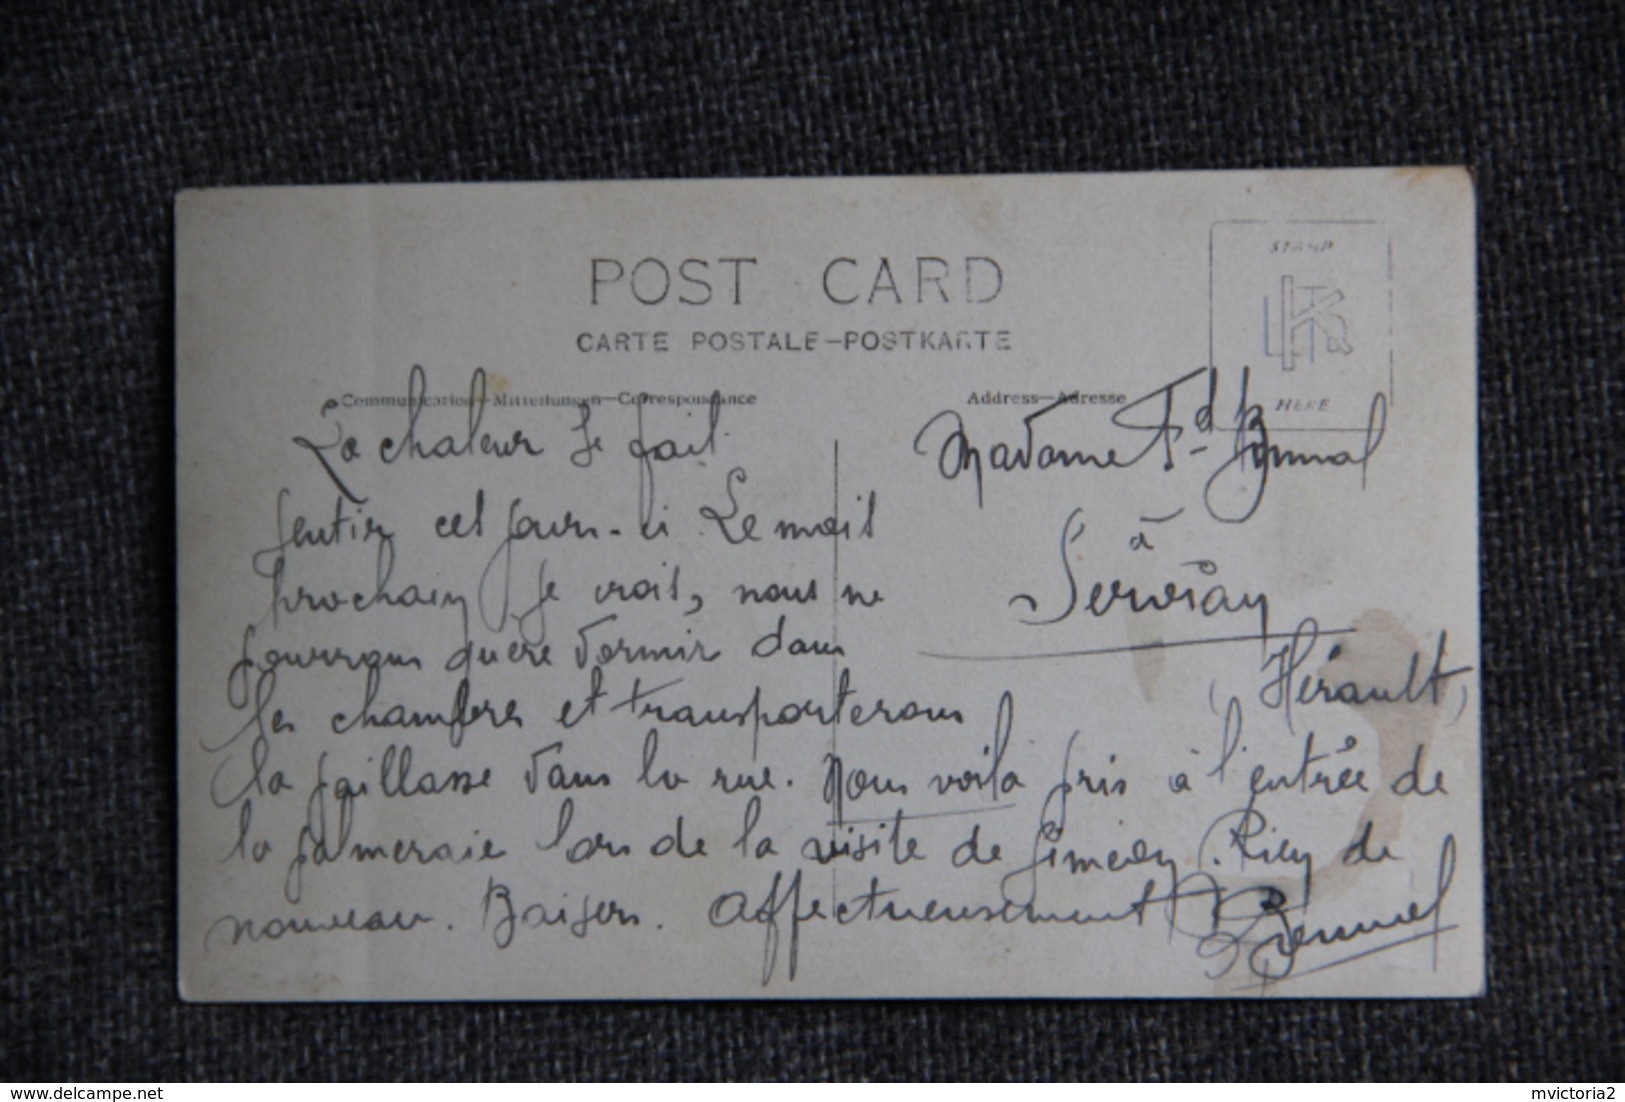 COLOMB BECHAR, Carte Photo De L'entrée De La Palmeraie Prise En Décembre 1912. - Bechar (Colomb Béchar)